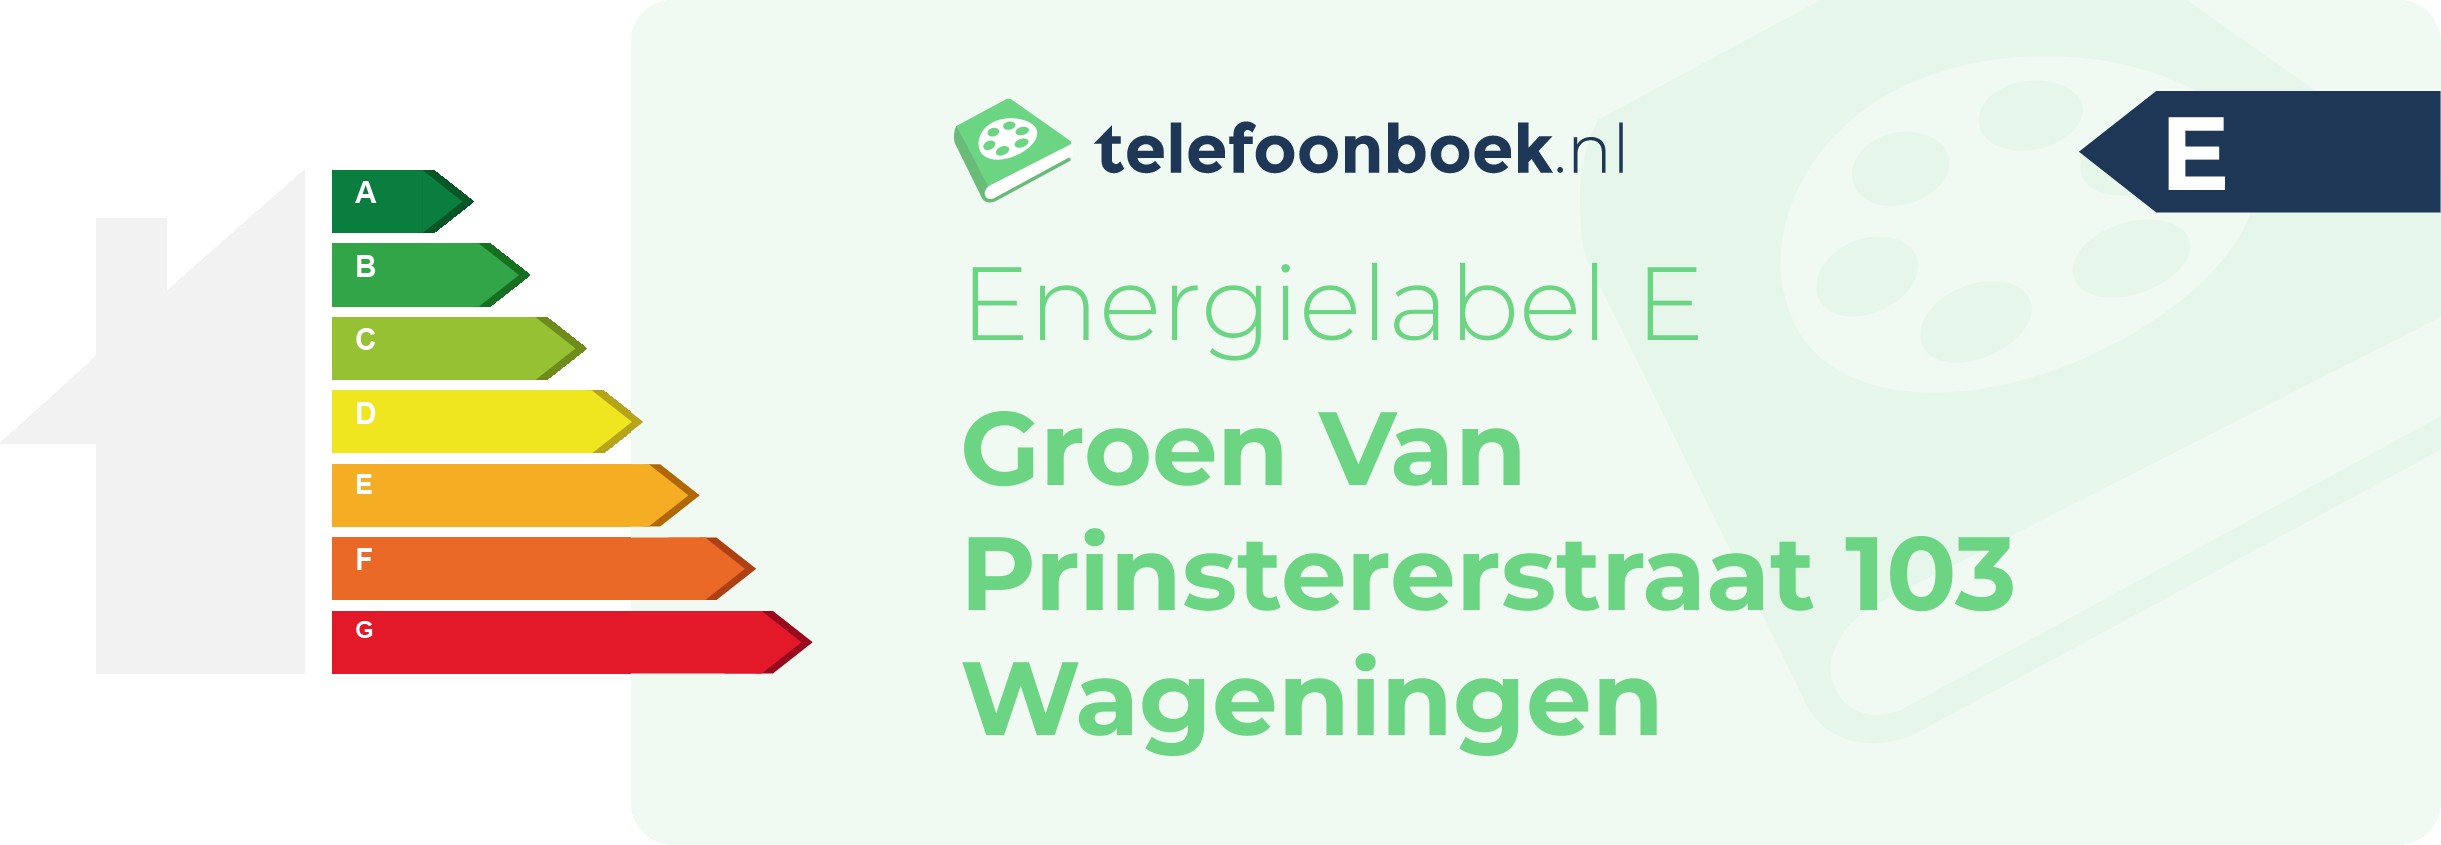 Energielabel Groen Van Prinstererstraat 103 Wageningen